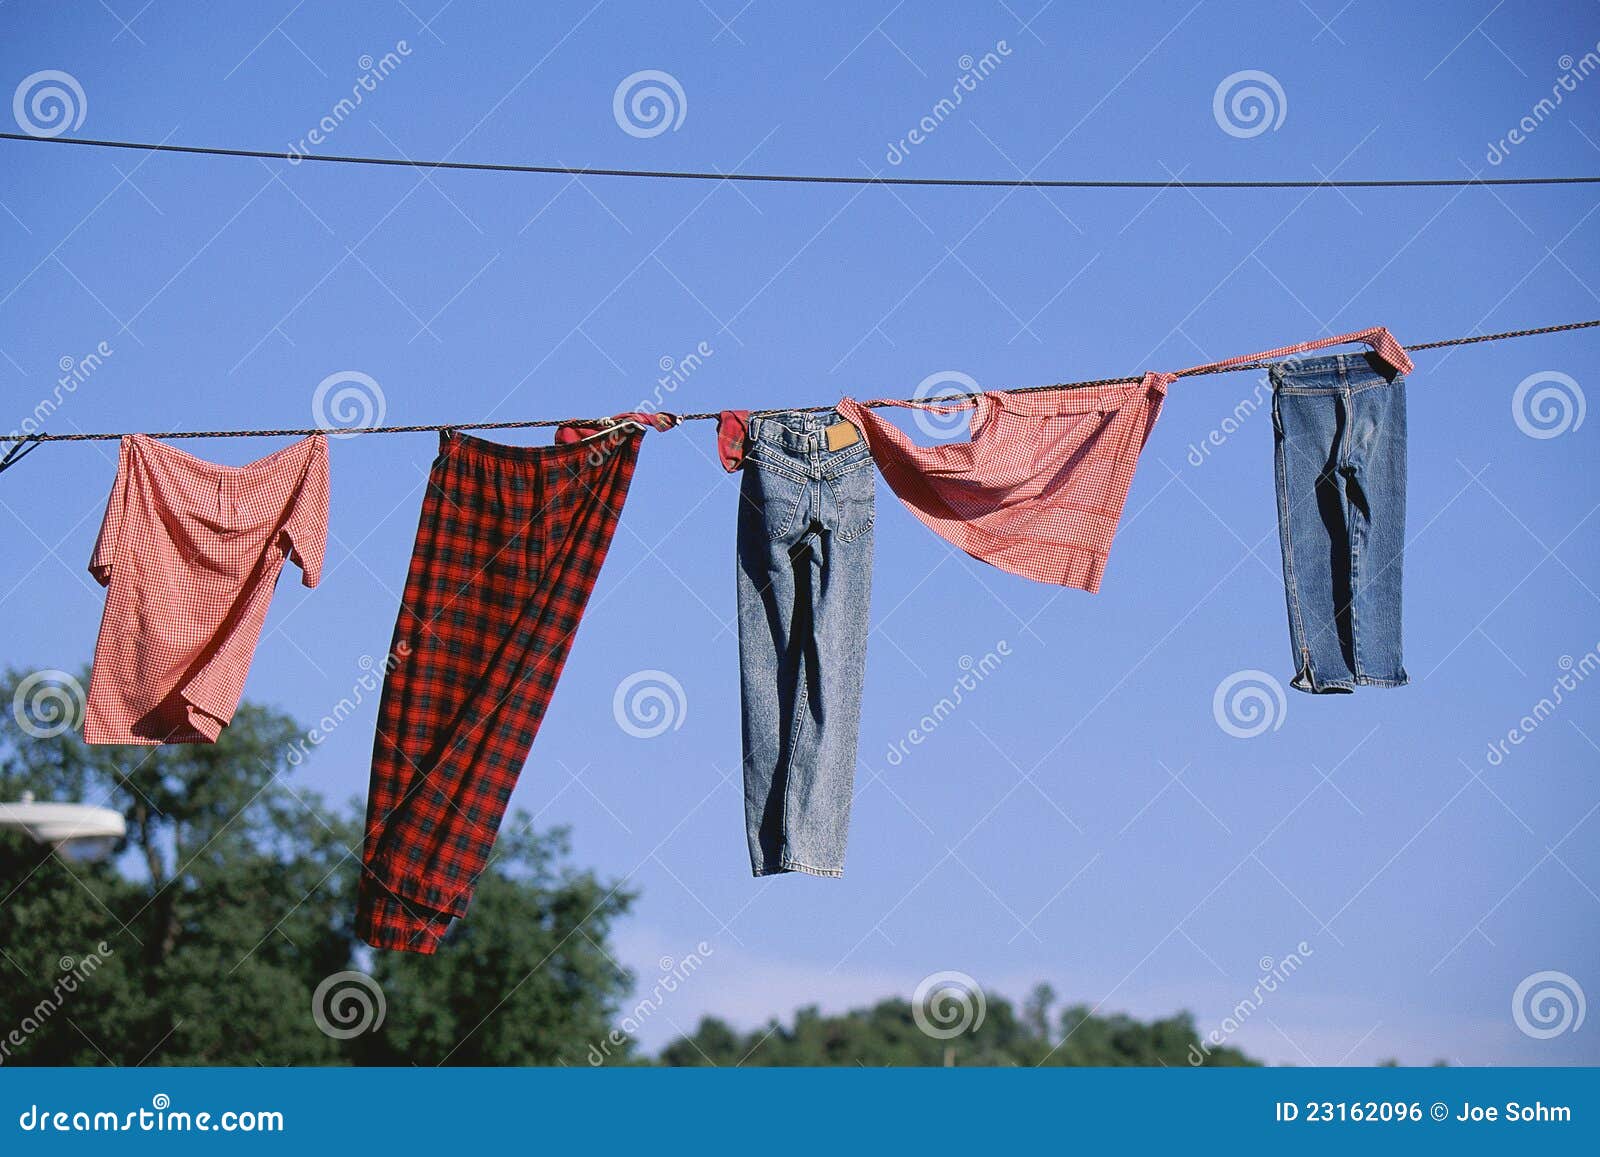 Clothing line stock photo. Image of launder, clothing - 23162096